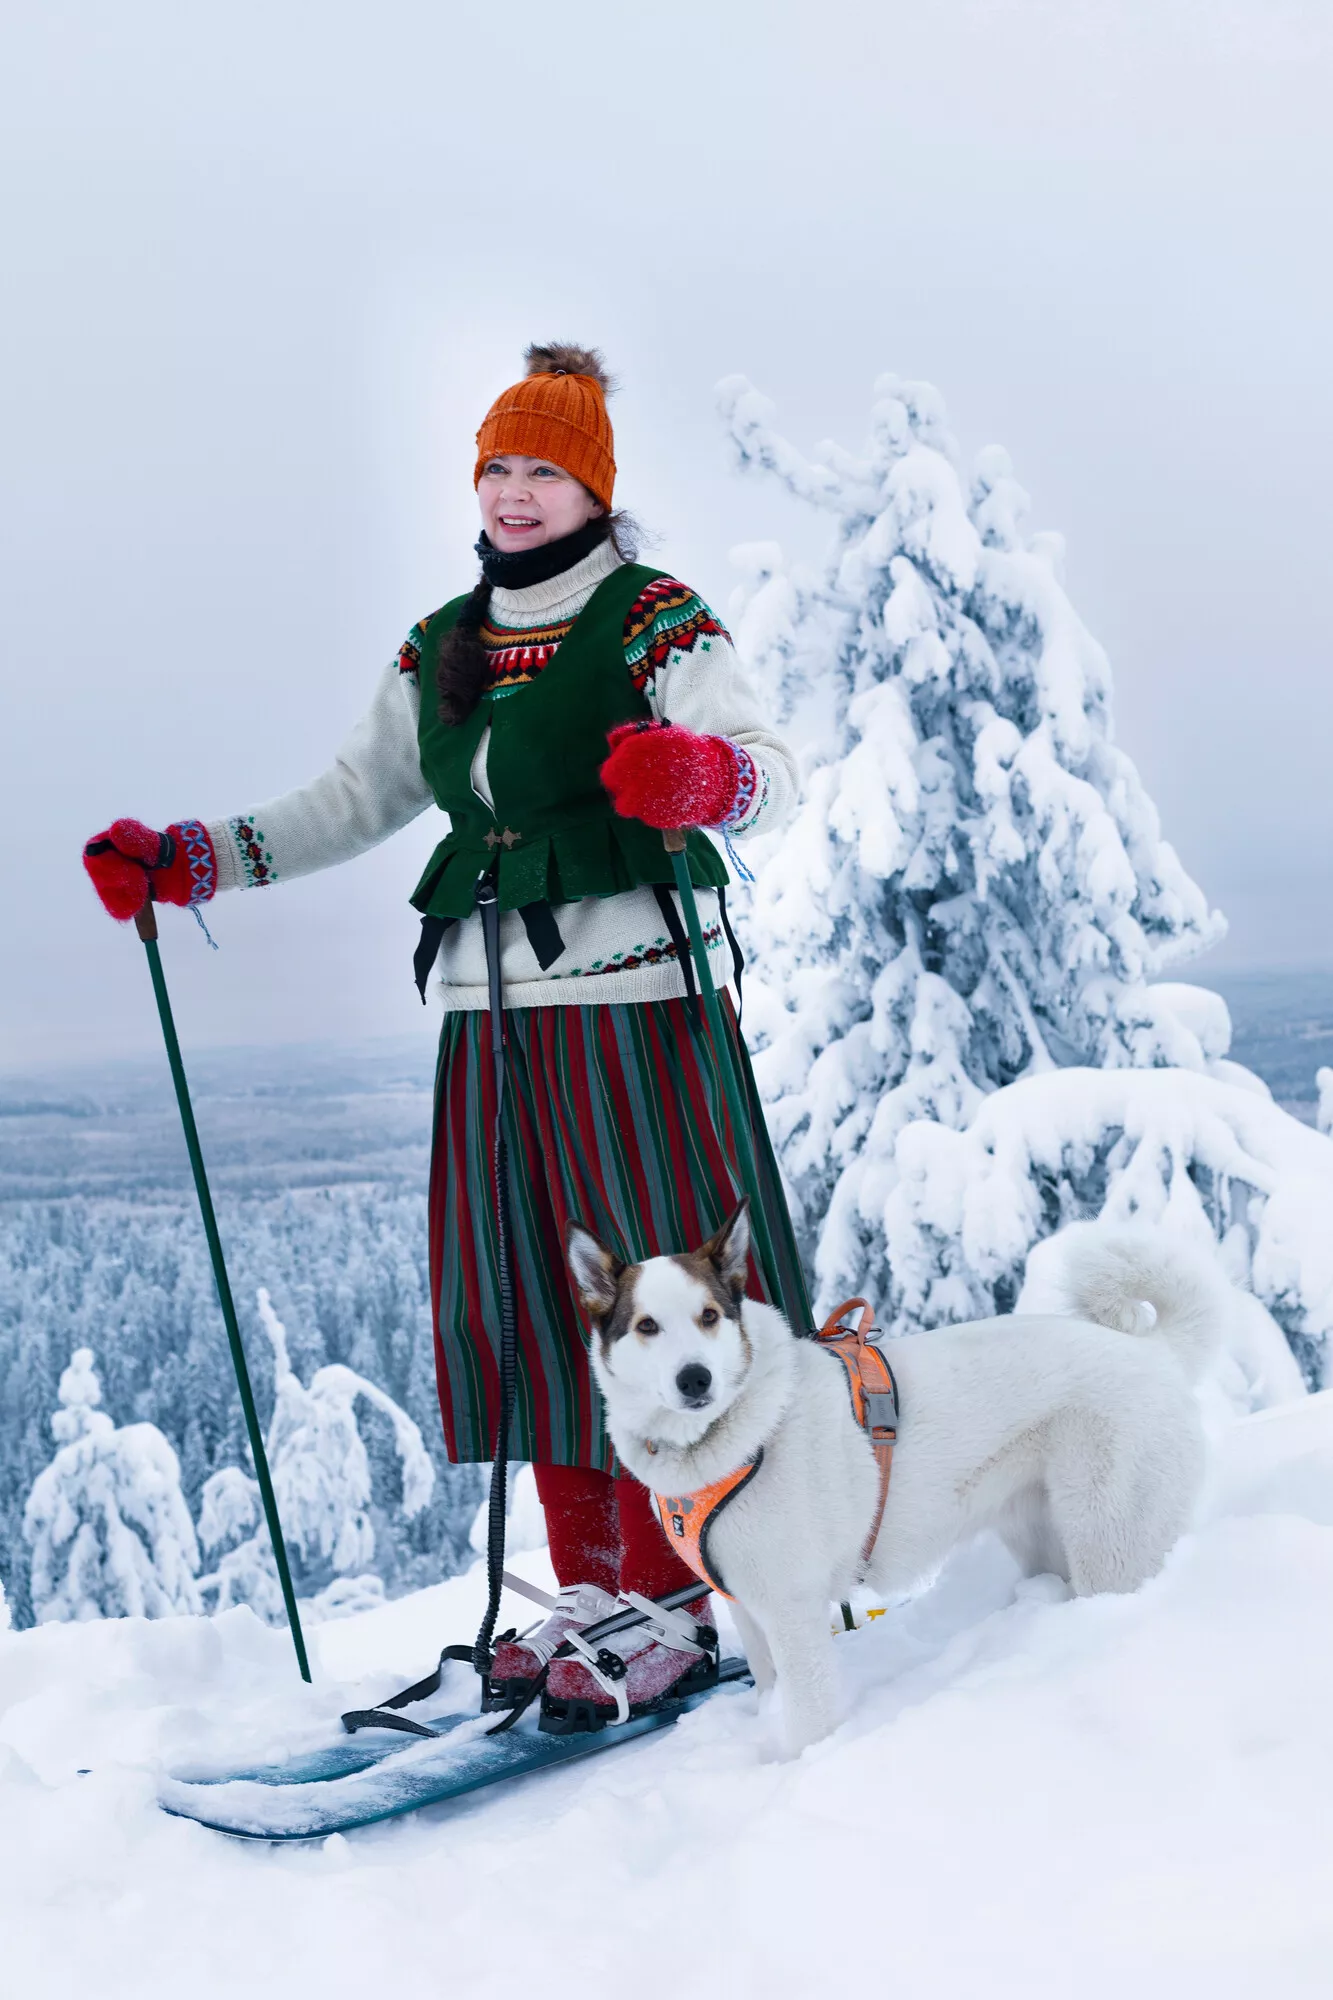 ”Minuun on iskenyt Koli-hulluus”, Johanna Arvion sanoo. Juhlapäivinä hän reippailee Lumi-koiran kanssa Tuunaa mun perinne -tyylillä: yhdistää Sortavalan kansallispuvun hameen äidin neulomaan villapaitaan ja pipoon.